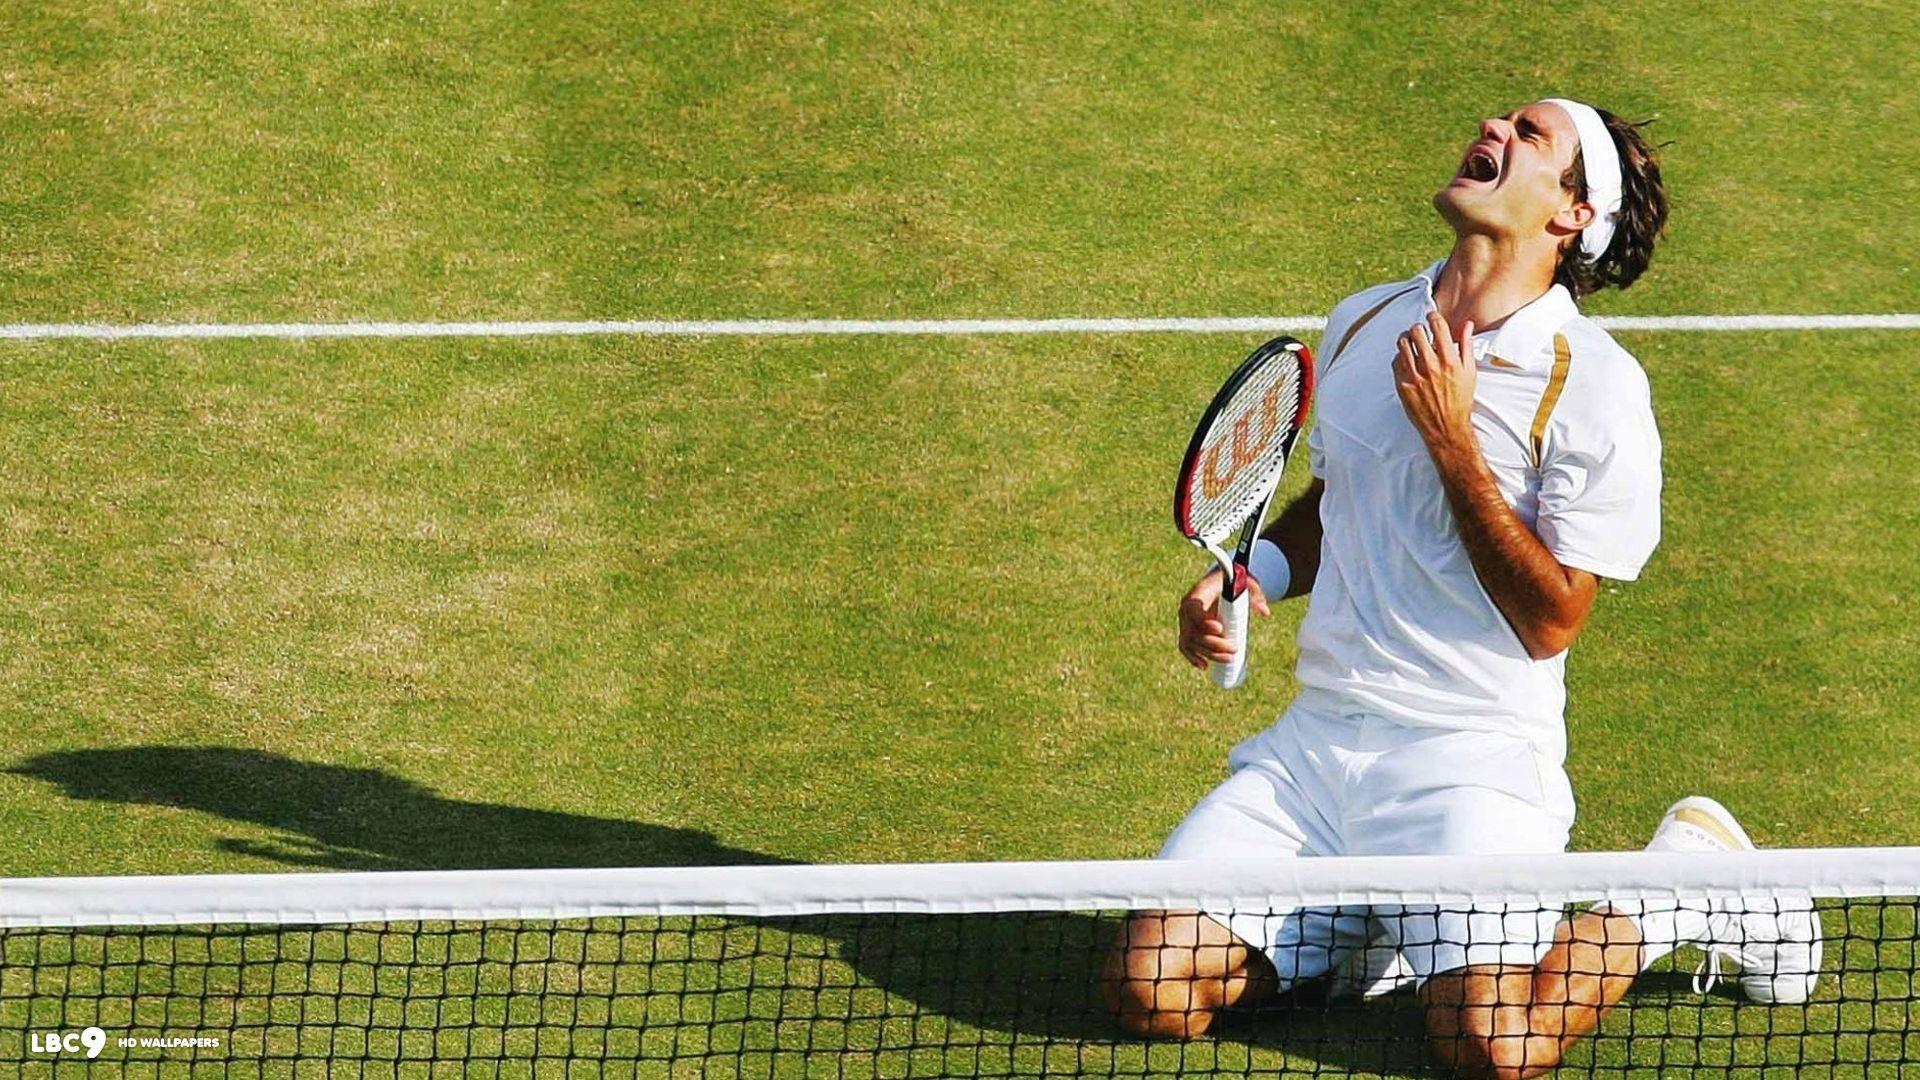 Wimbledon Wallpapers - Top Free Wimbledon Backgrounds ...